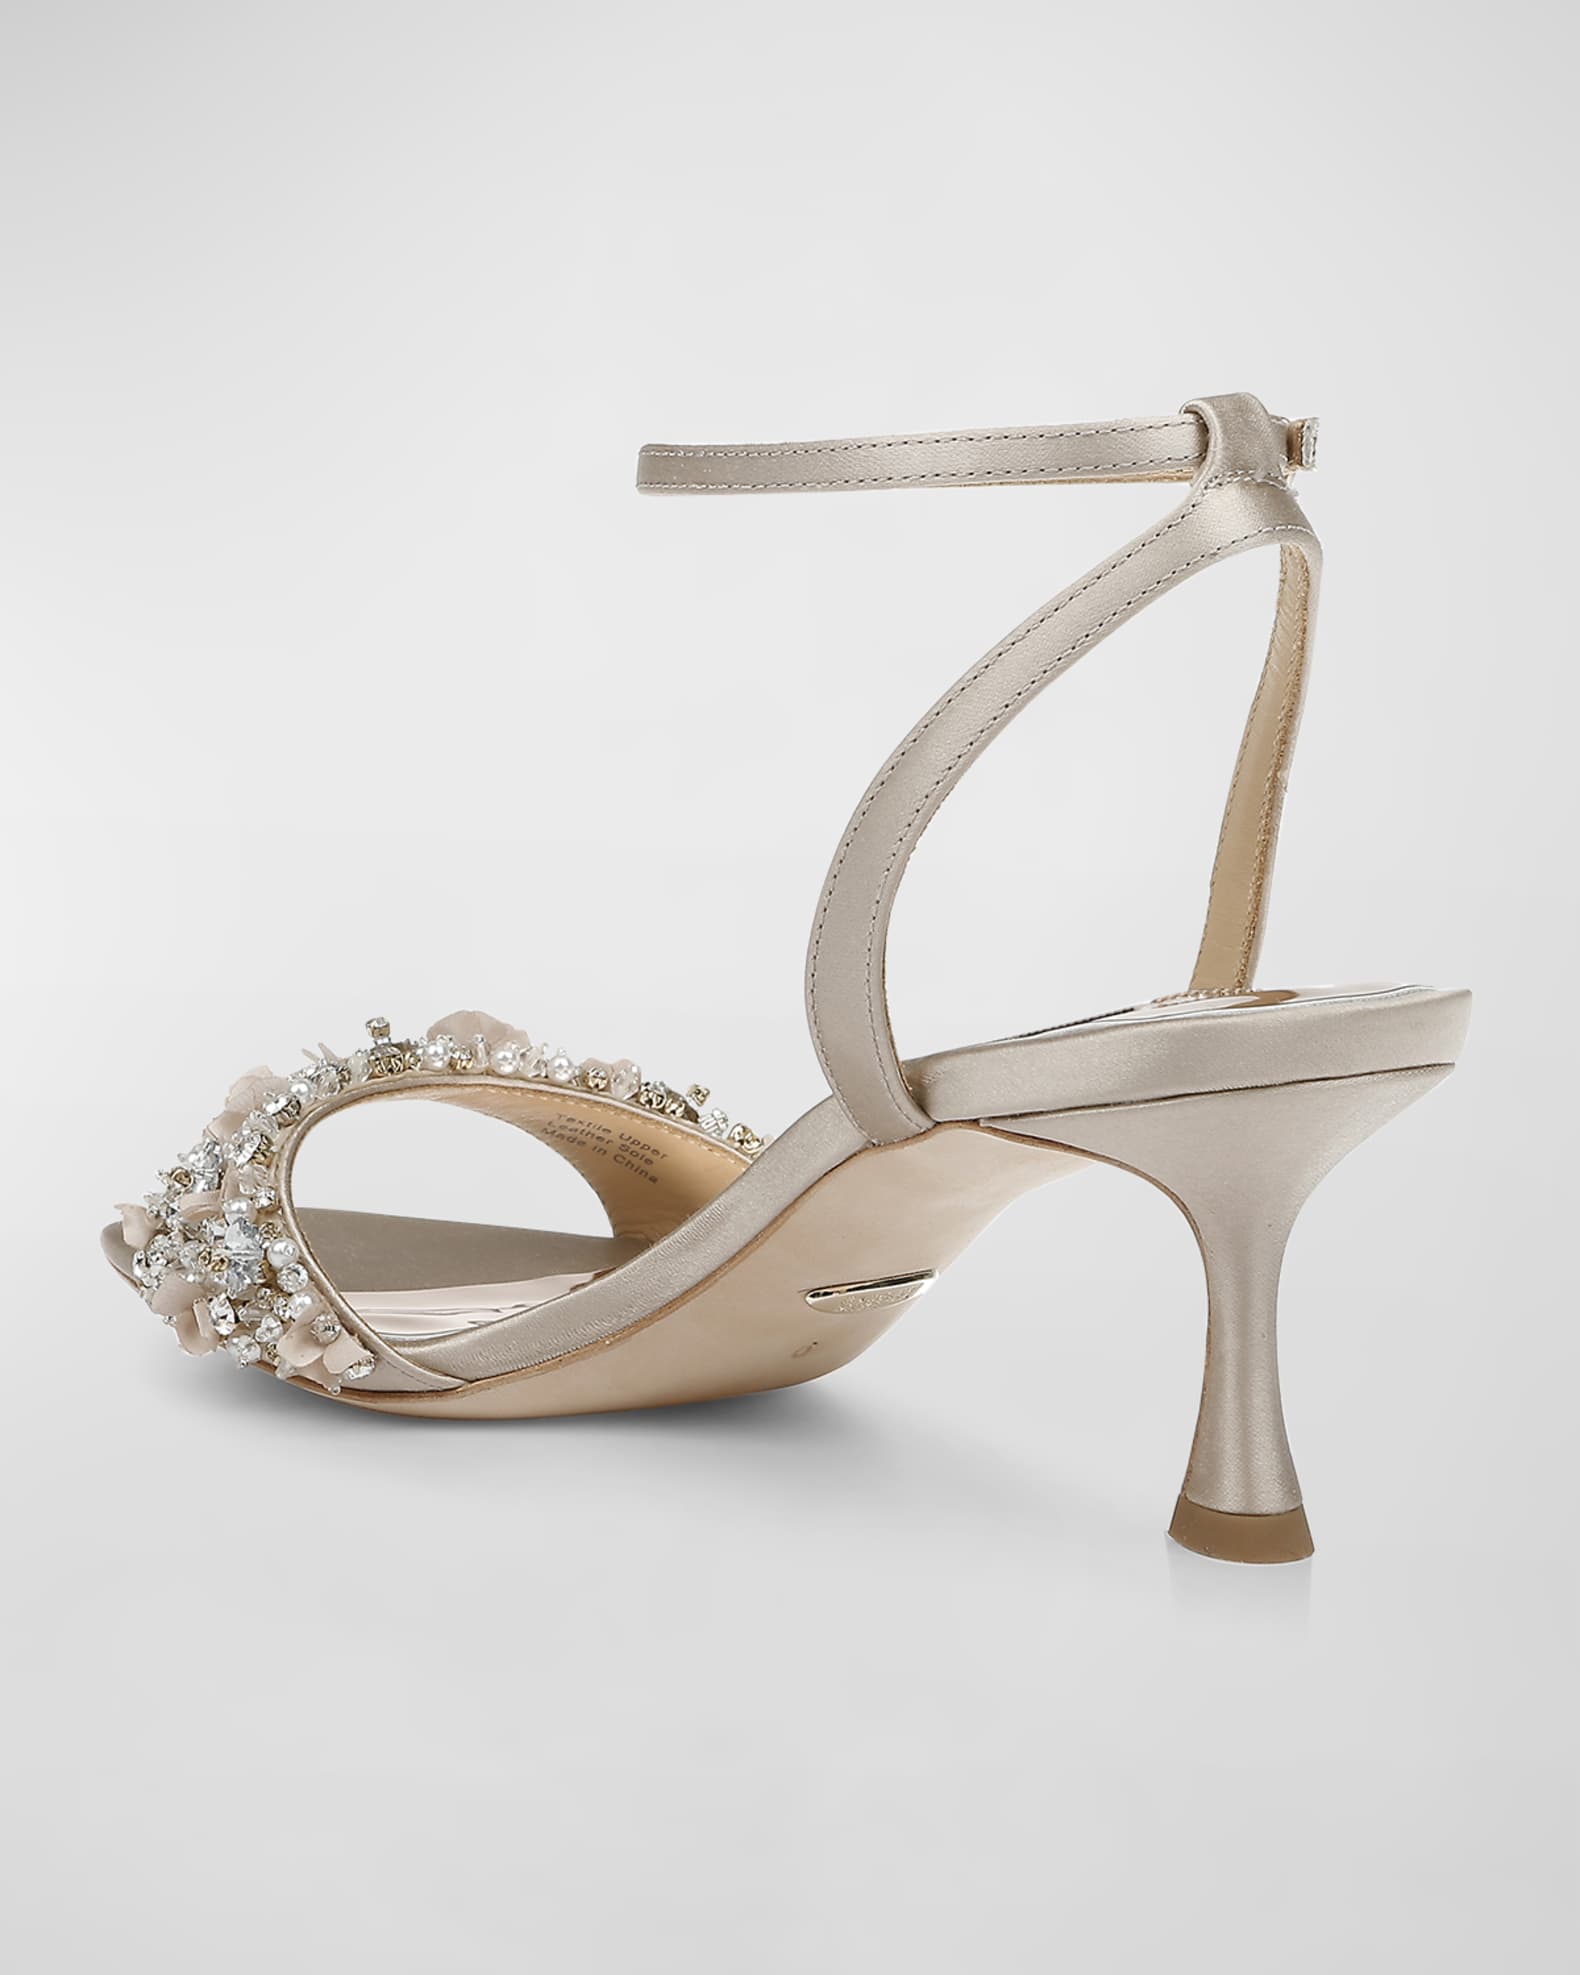 Badgley Mischka Telissa Satin Embellished Ankle-Strap Sandals | Neiman ...